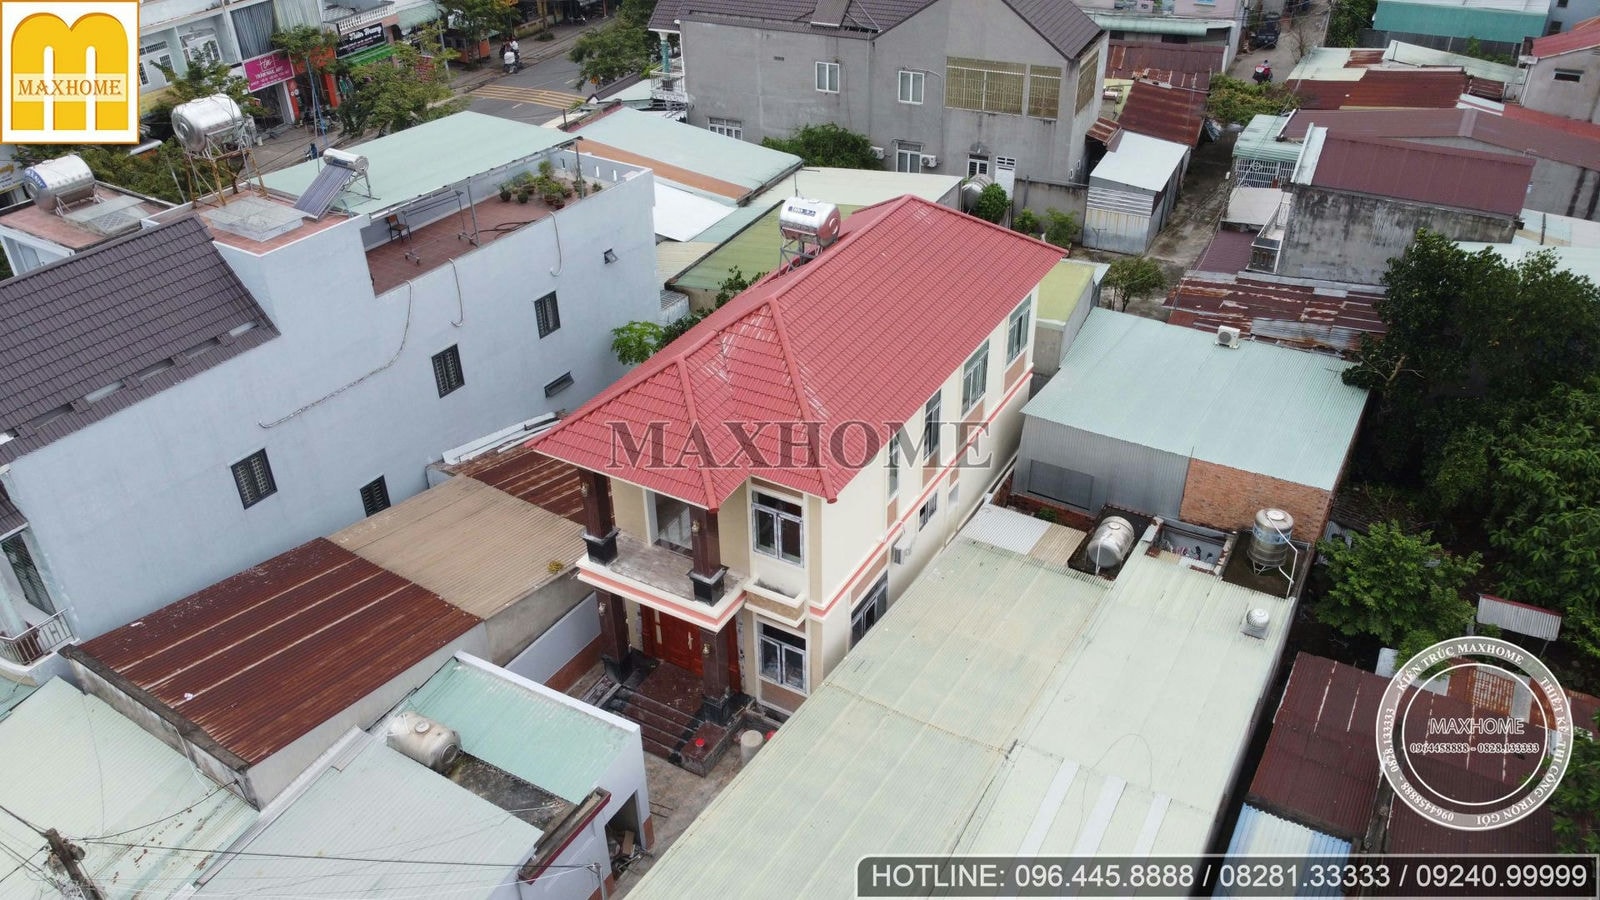 Thực tế mẫu nhà 2 tầng mái Nhật độc đáo ở Đồng Nai đến từ Maxhome